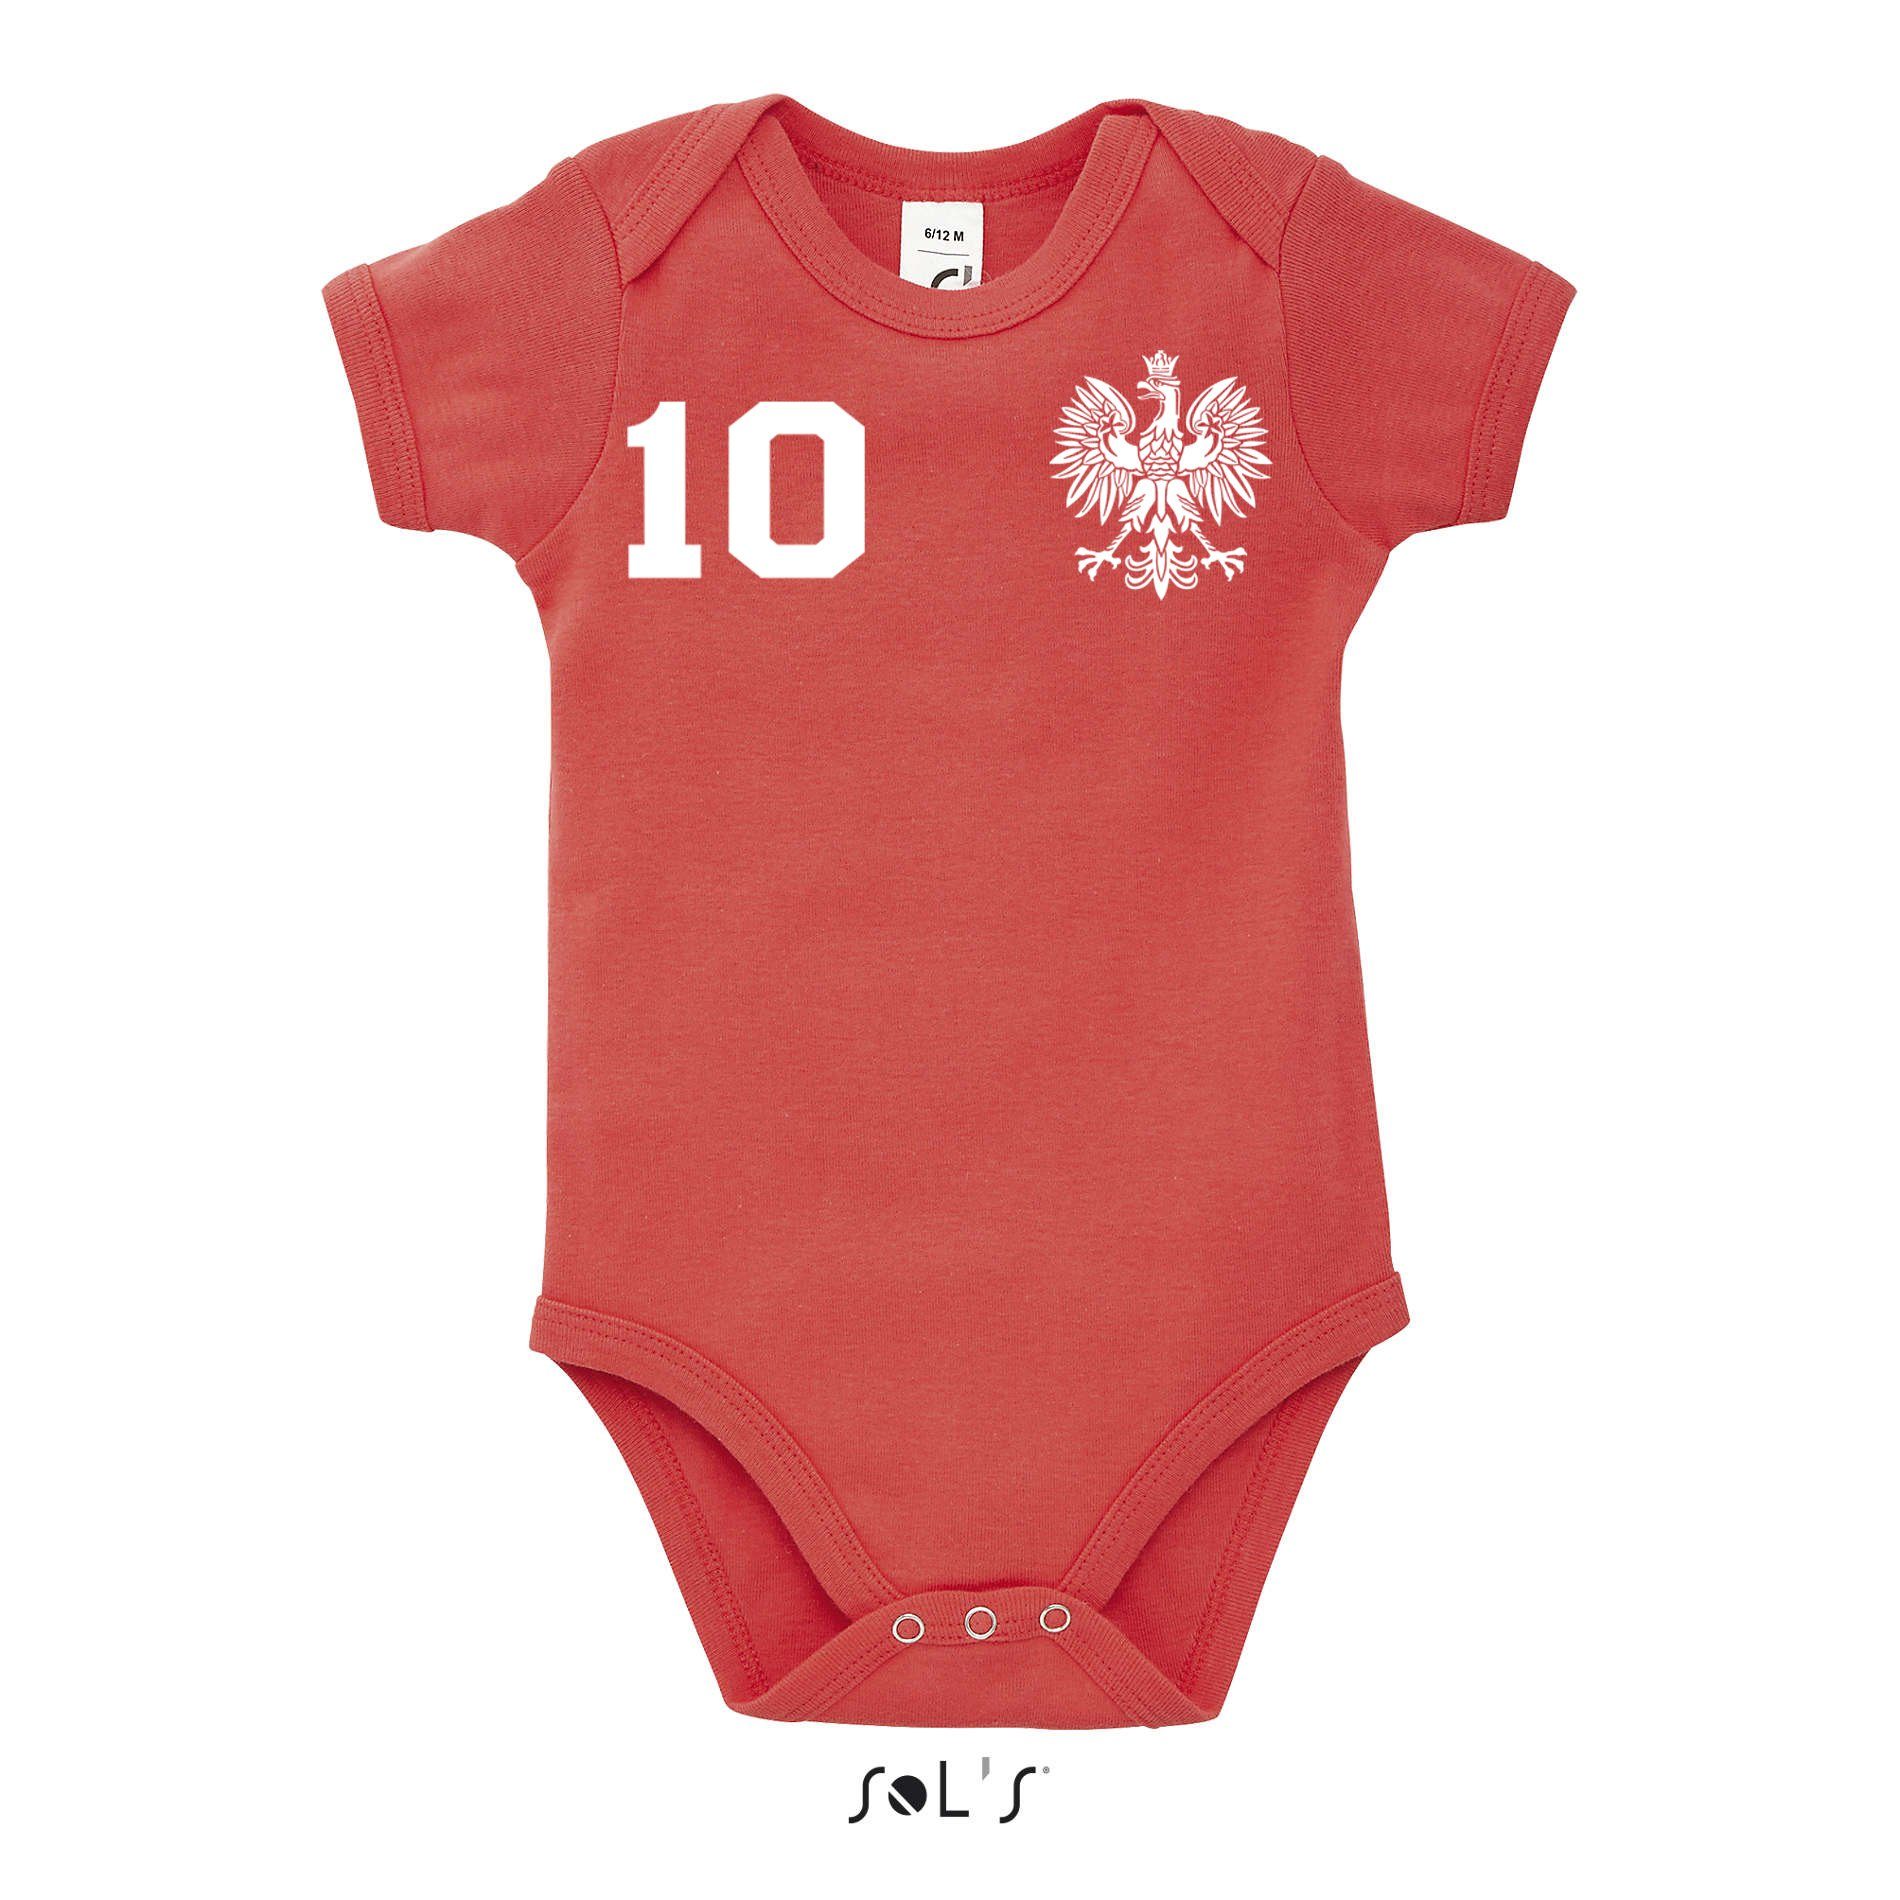 Sport Polska Fußball Weiss/Rot Blondie & Baby Kinder Trikot WM Europa Brownie EM Meister Strampler Polen